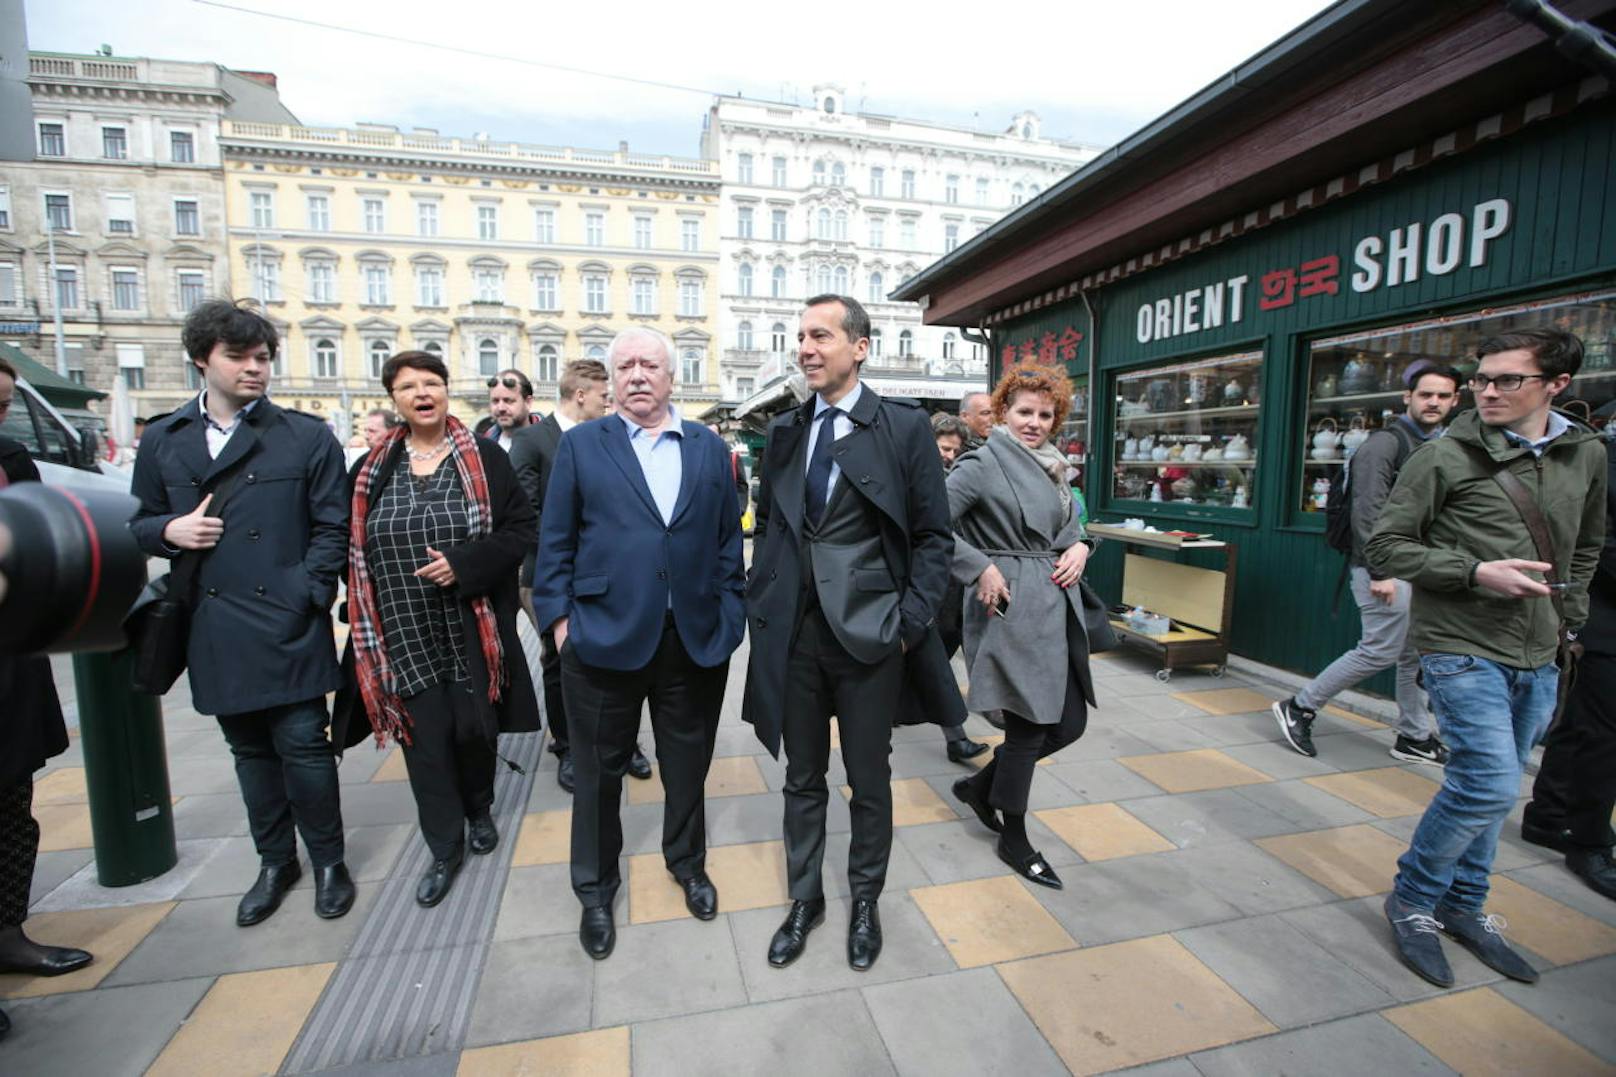 Auf dem Programm stand auch ein Besuch am Naschmarkt, gemeinsam mit Bürgermeister Häupl und Finanzstadträtin Brauner